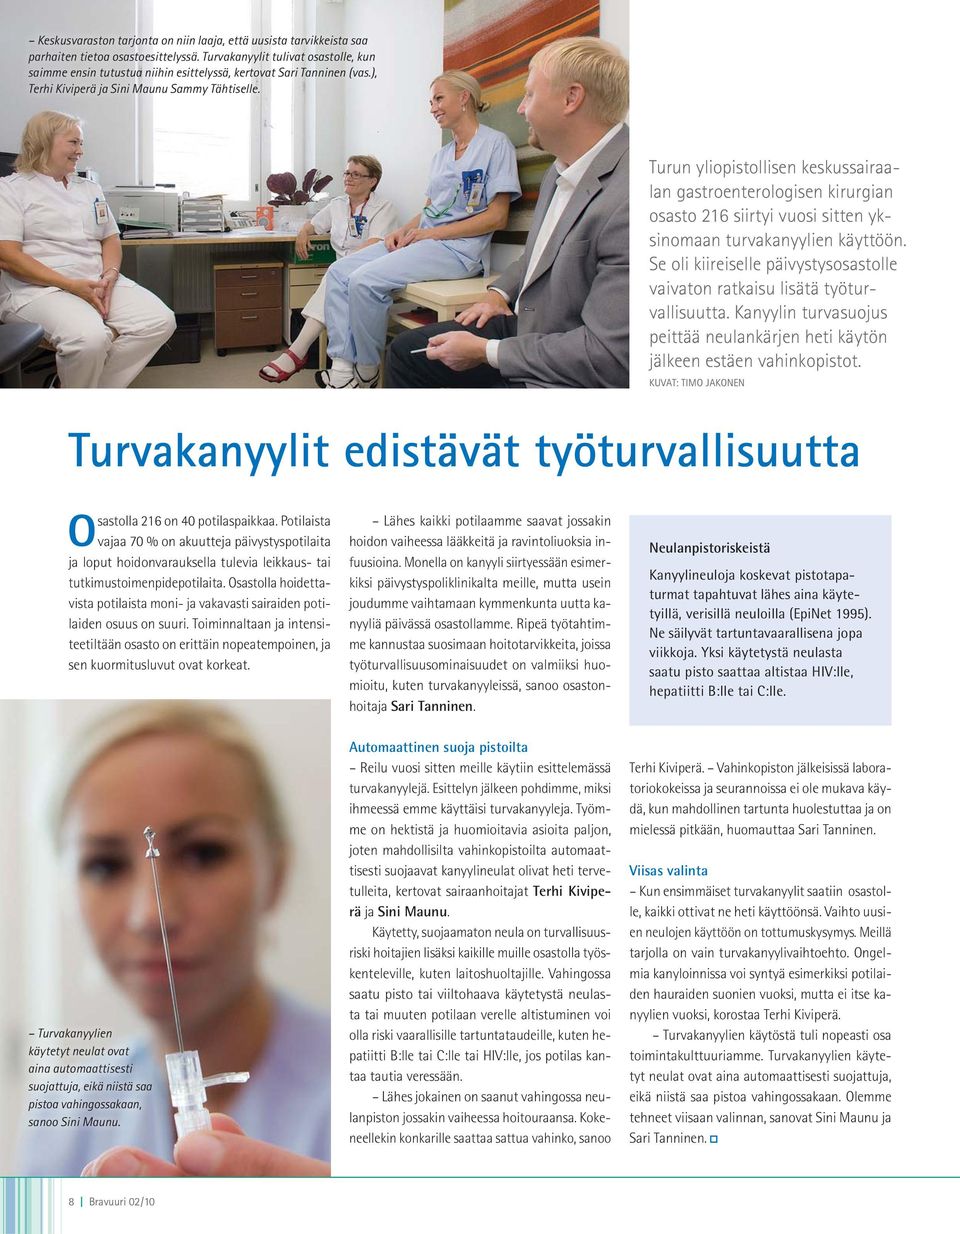 Turun yliopistollisen keskussairaalan gastroenterologisen kirurgian osasto 216 siirtyi vuosi sitten yksinomaan turvakanyylien käyttöön.